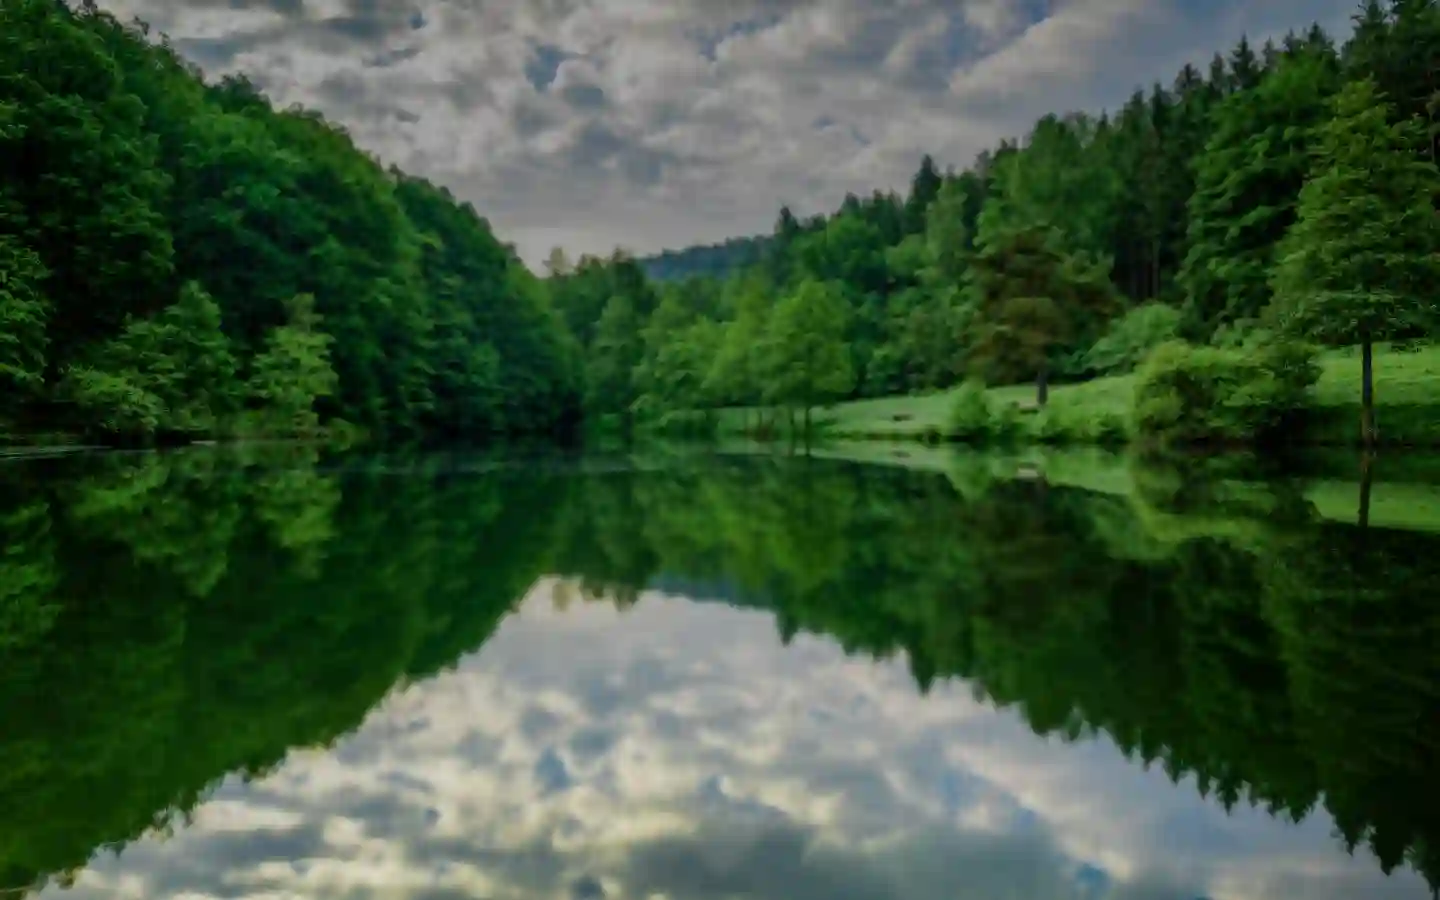 lago con bosque de árboles